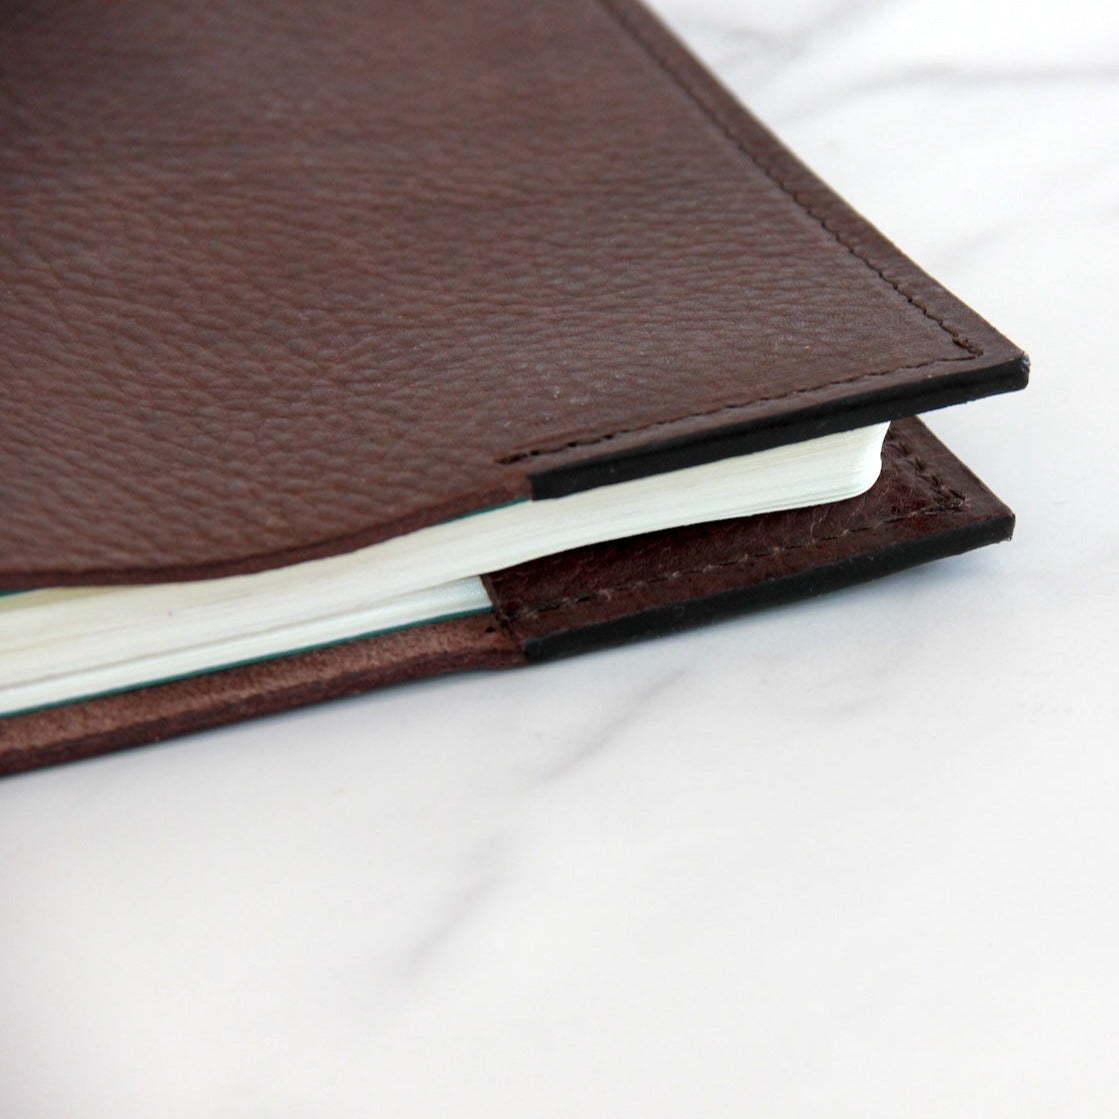 Handgemaakte leren hoes voor notitieboek in choco natuurlijk gelooid rundleer detail